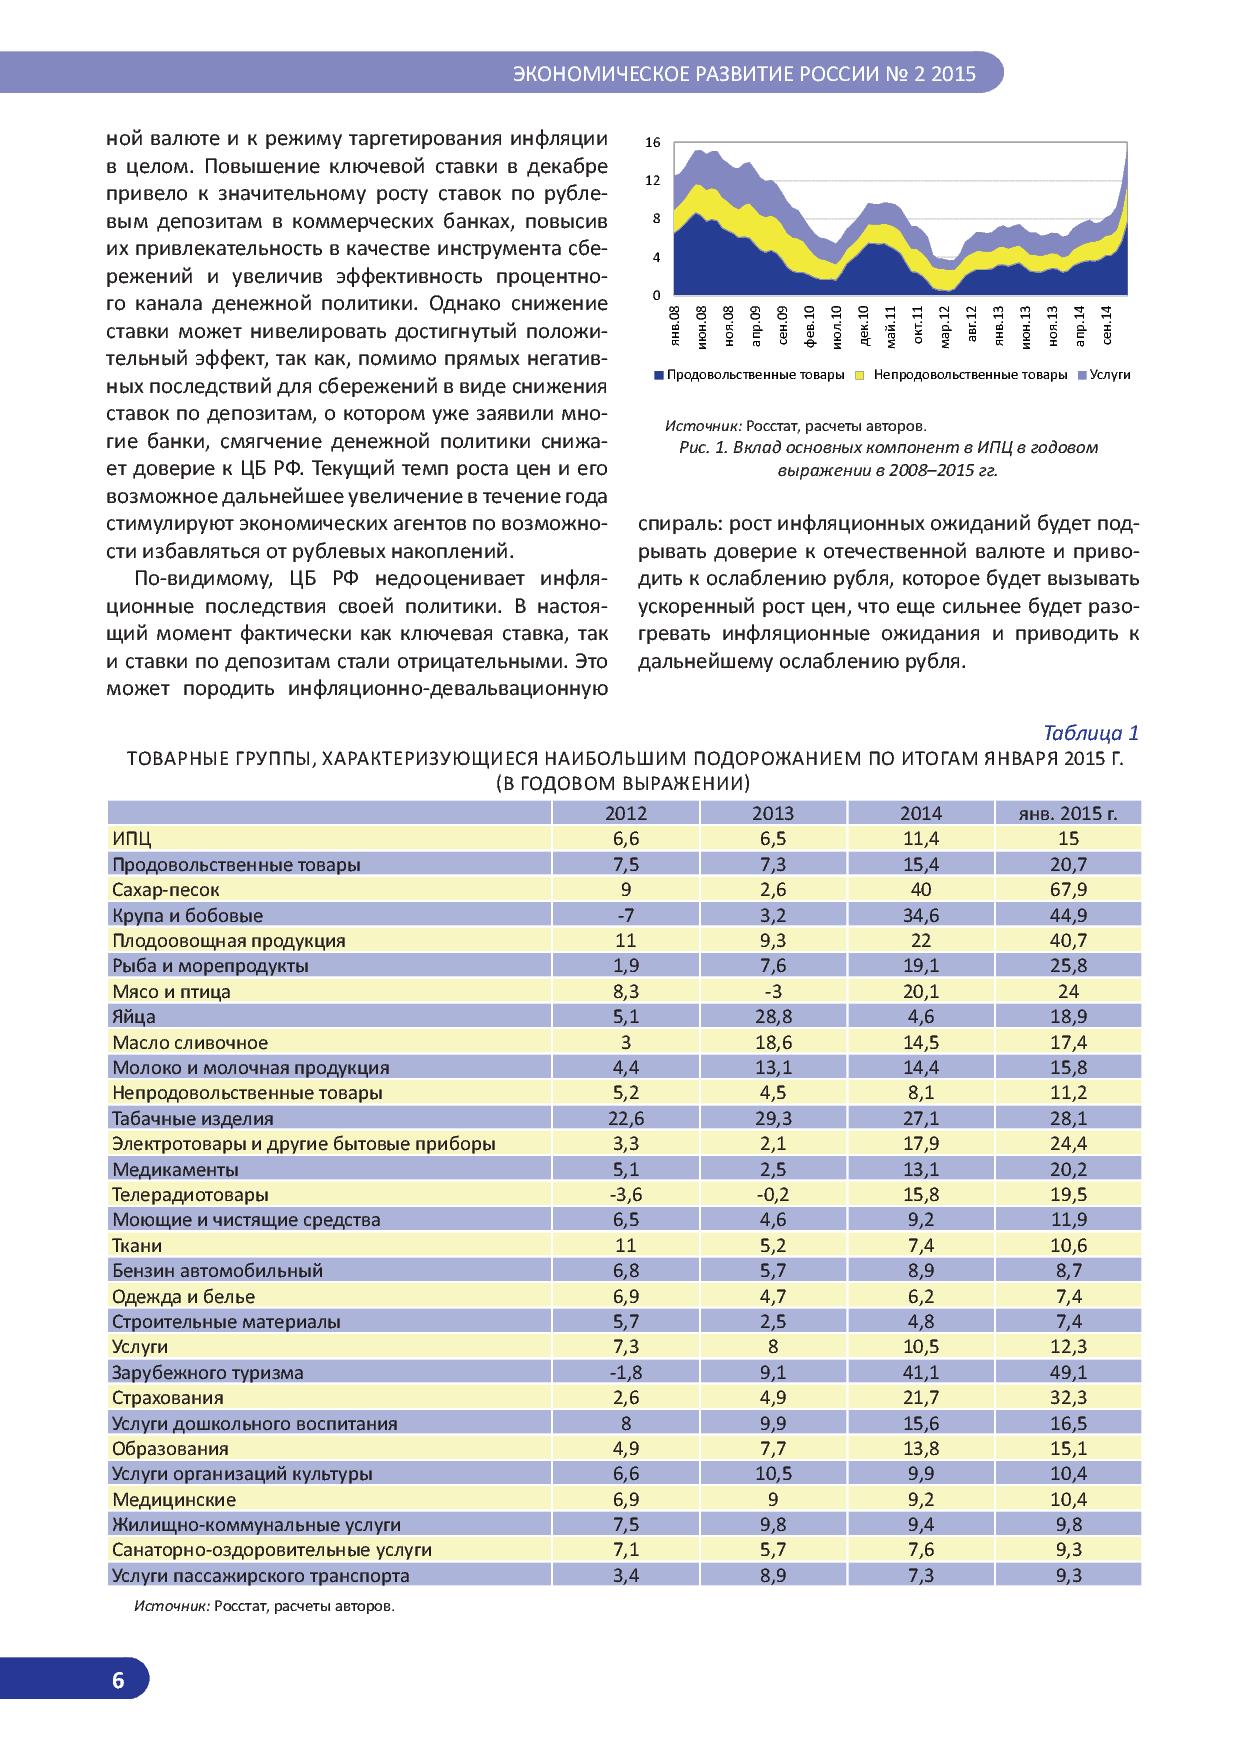   Оперативный мониторинг экономической ситуации в России. Тенденции и вызовы социально-экономического развития  - фото 7